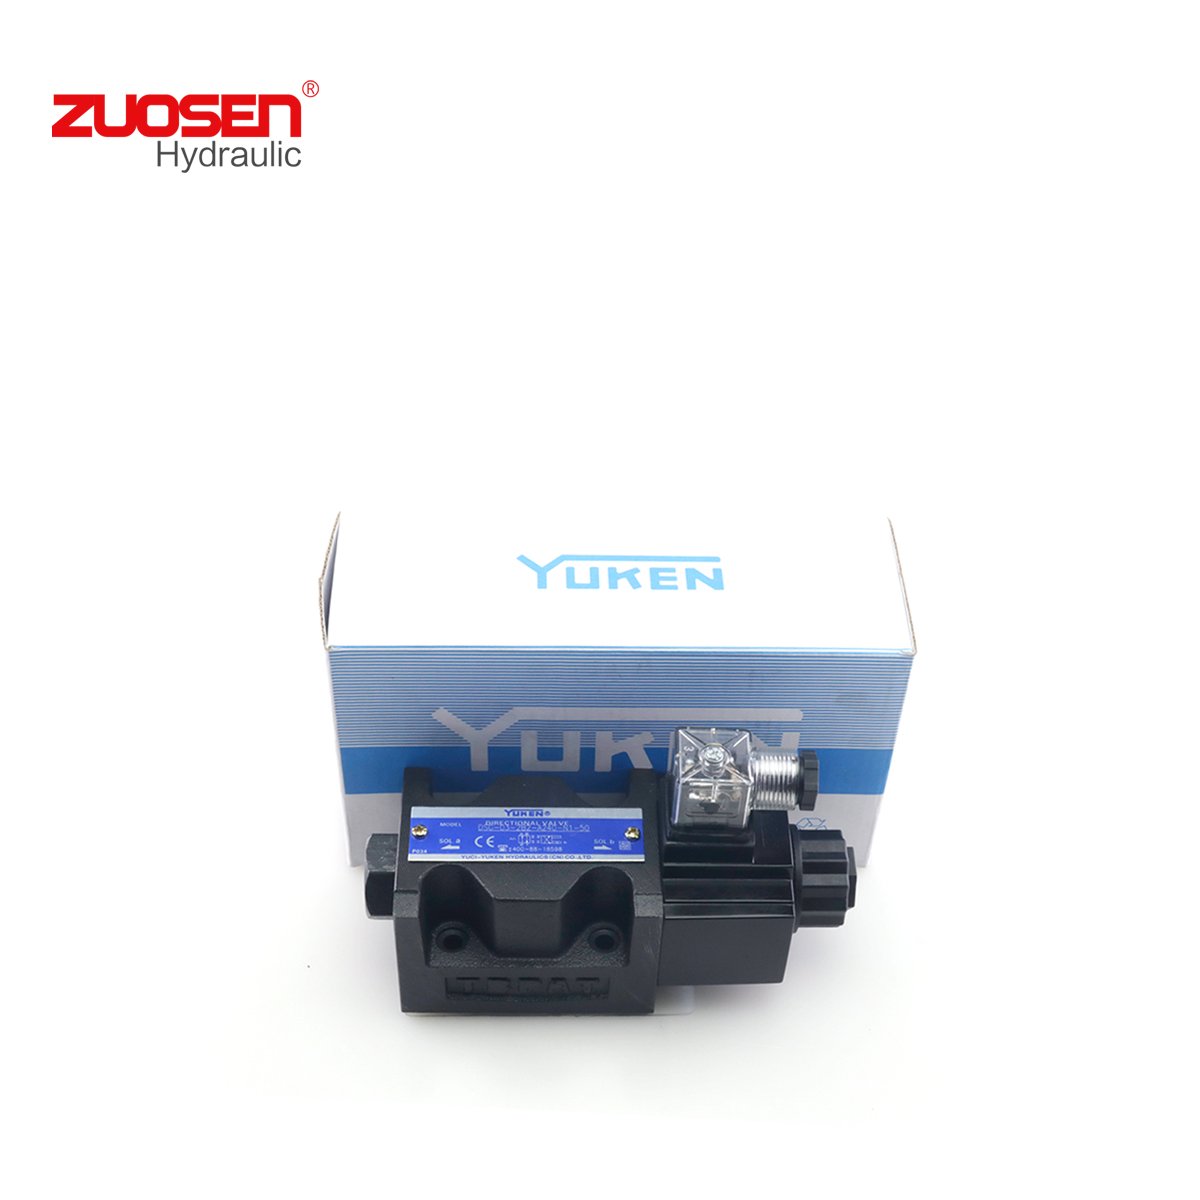 Yuken DSG-03-2B2-A240-N1-50 Hydraulic Valve